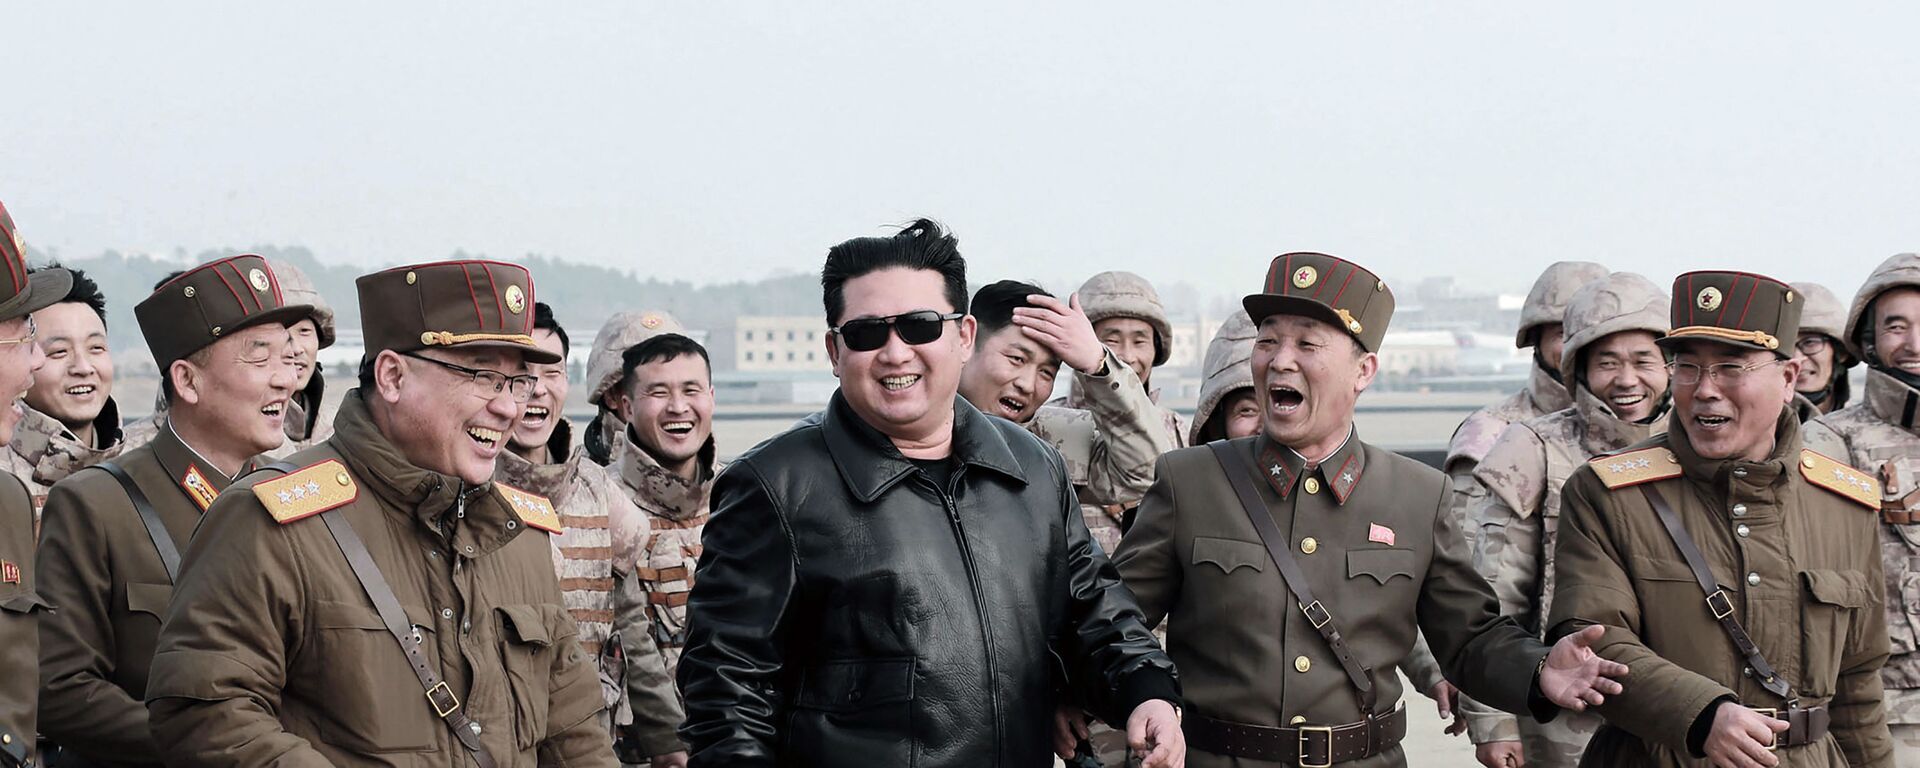 زعيم كوريا الشمالية كيم جونغ أون عند إطلاق  ما سمته وسائل إعلامية أنه نوع جديد من الصواريخ الباليستية العابرة للقارات، في هذه الصورة التي نشرتها وكالة الأنباء المركزية الكورية الشمالية  في 24 مارس 2022. - سبوتنيك عربي, 1920, 24.04.2022